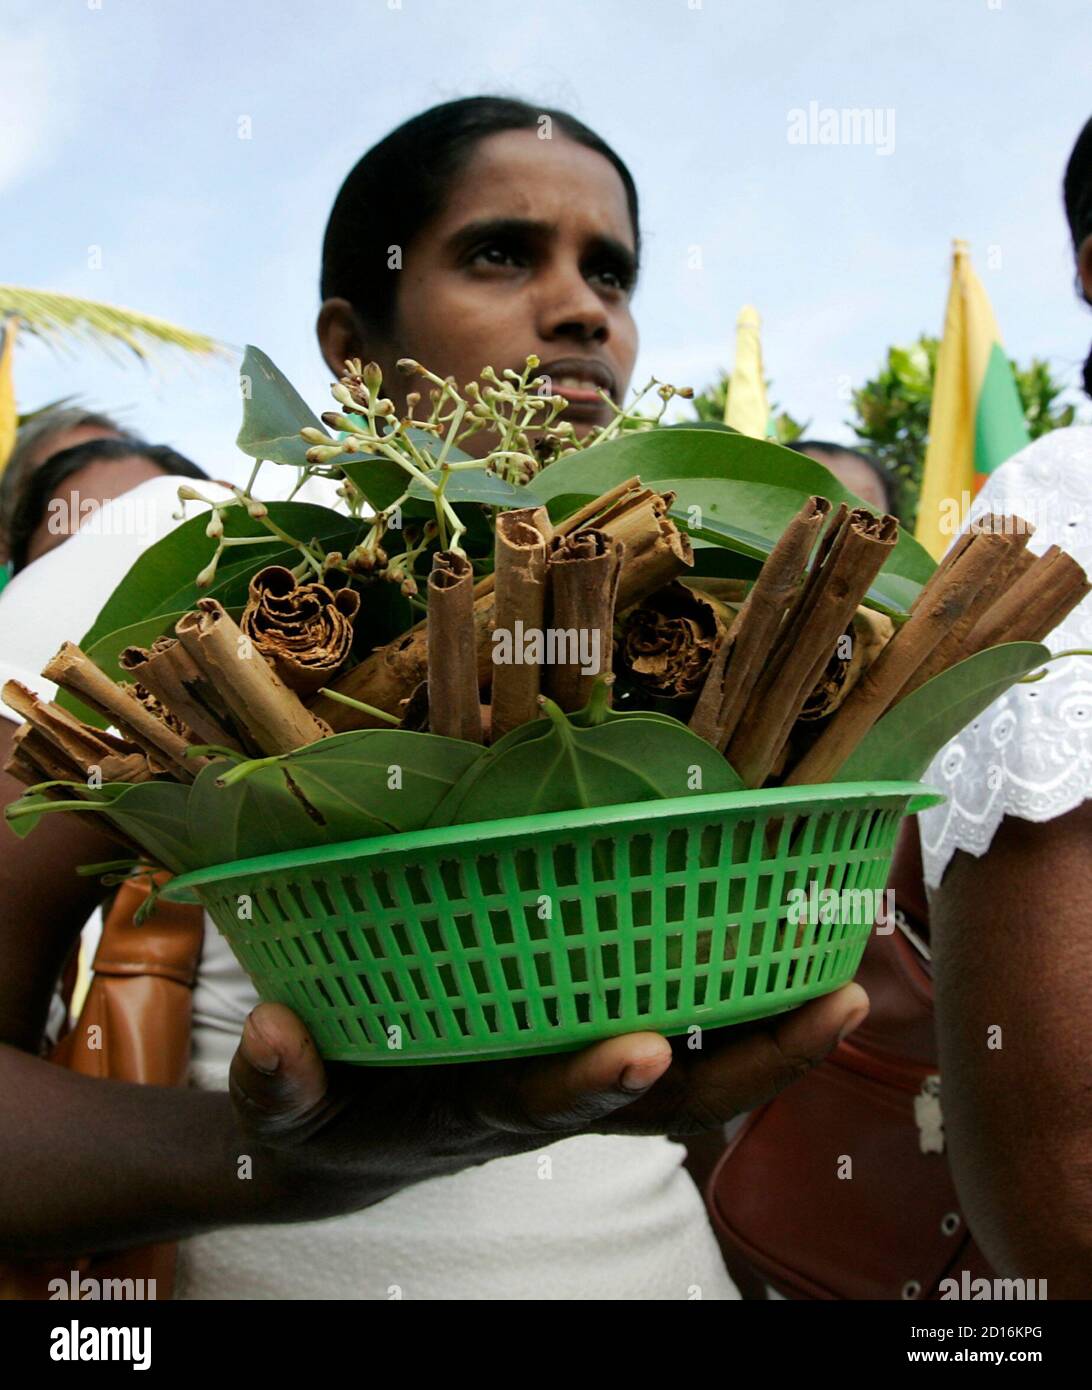 Un producteur de cannelle porte une partie de sa culture lors d'une procession à Hikkaduwa, le 22 décembre 2007. Dansant à la batterie traditionnelle, les producteurs de cannelle sri lankais ont offert une partie de leur récolte aux dieux païens samedi en reconnaissance d'une reprise régulière après le tsunami de 2004. REUTERS/Anurudha Lokuhapuarachchi (SRI LANKA) Banque D'Images